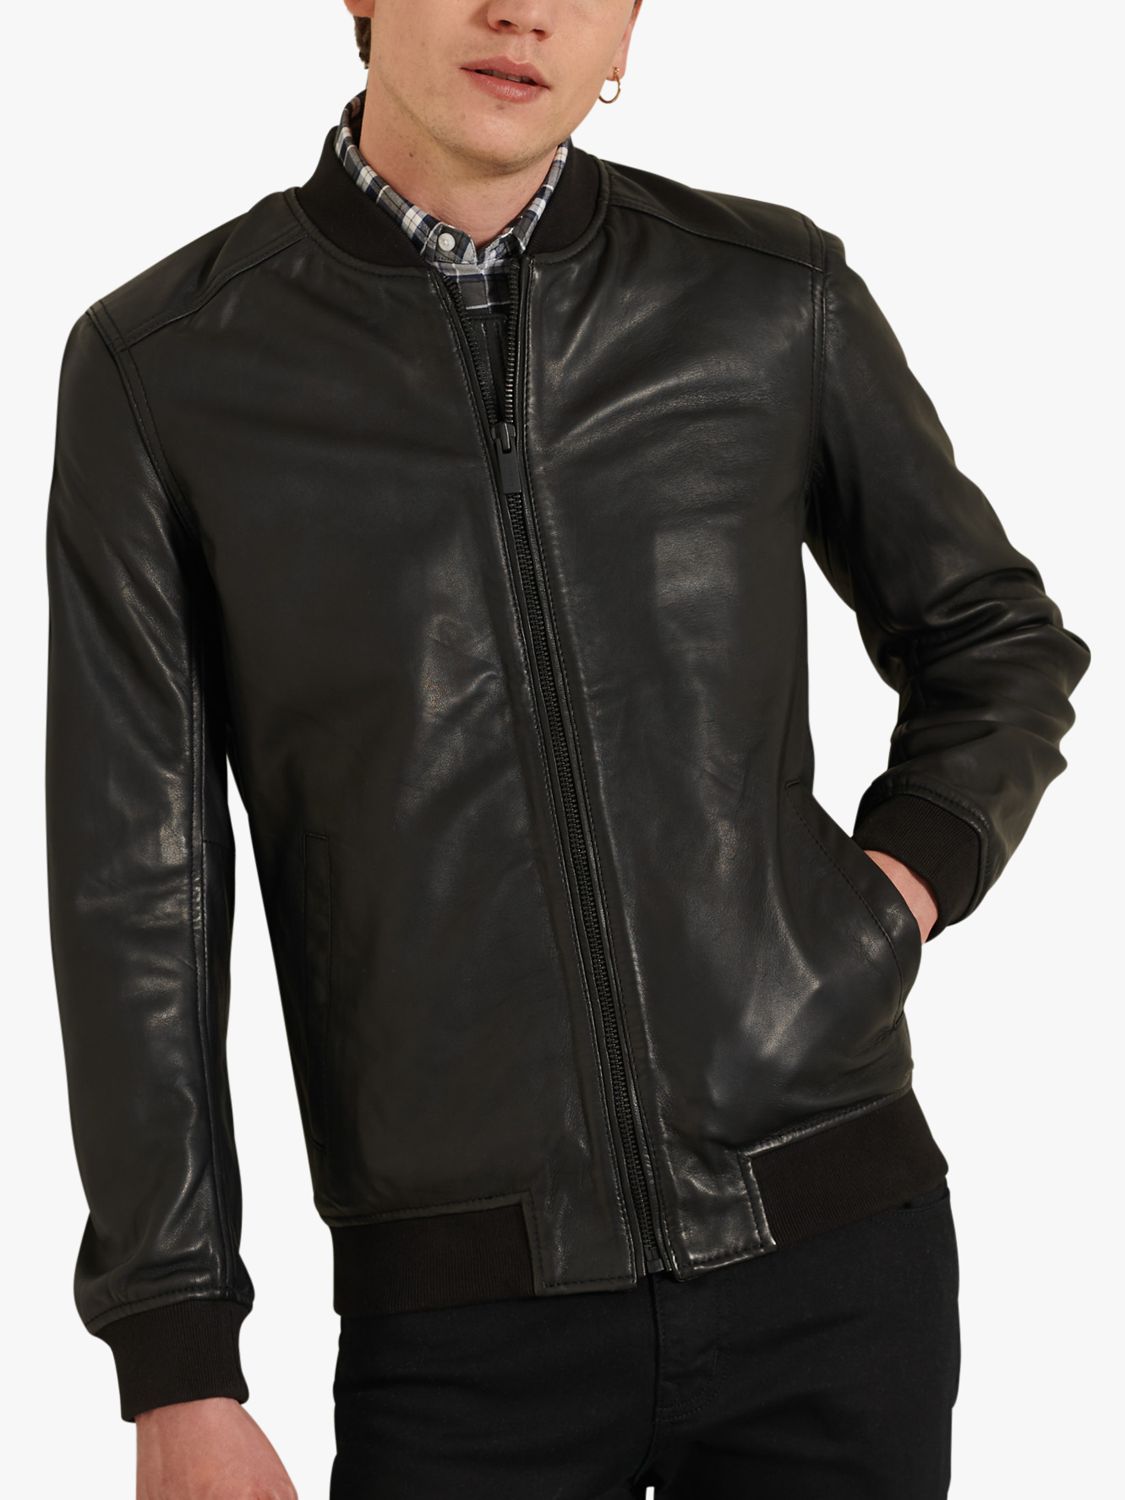 Superdry Leather Bomber Jacket, Black, XS